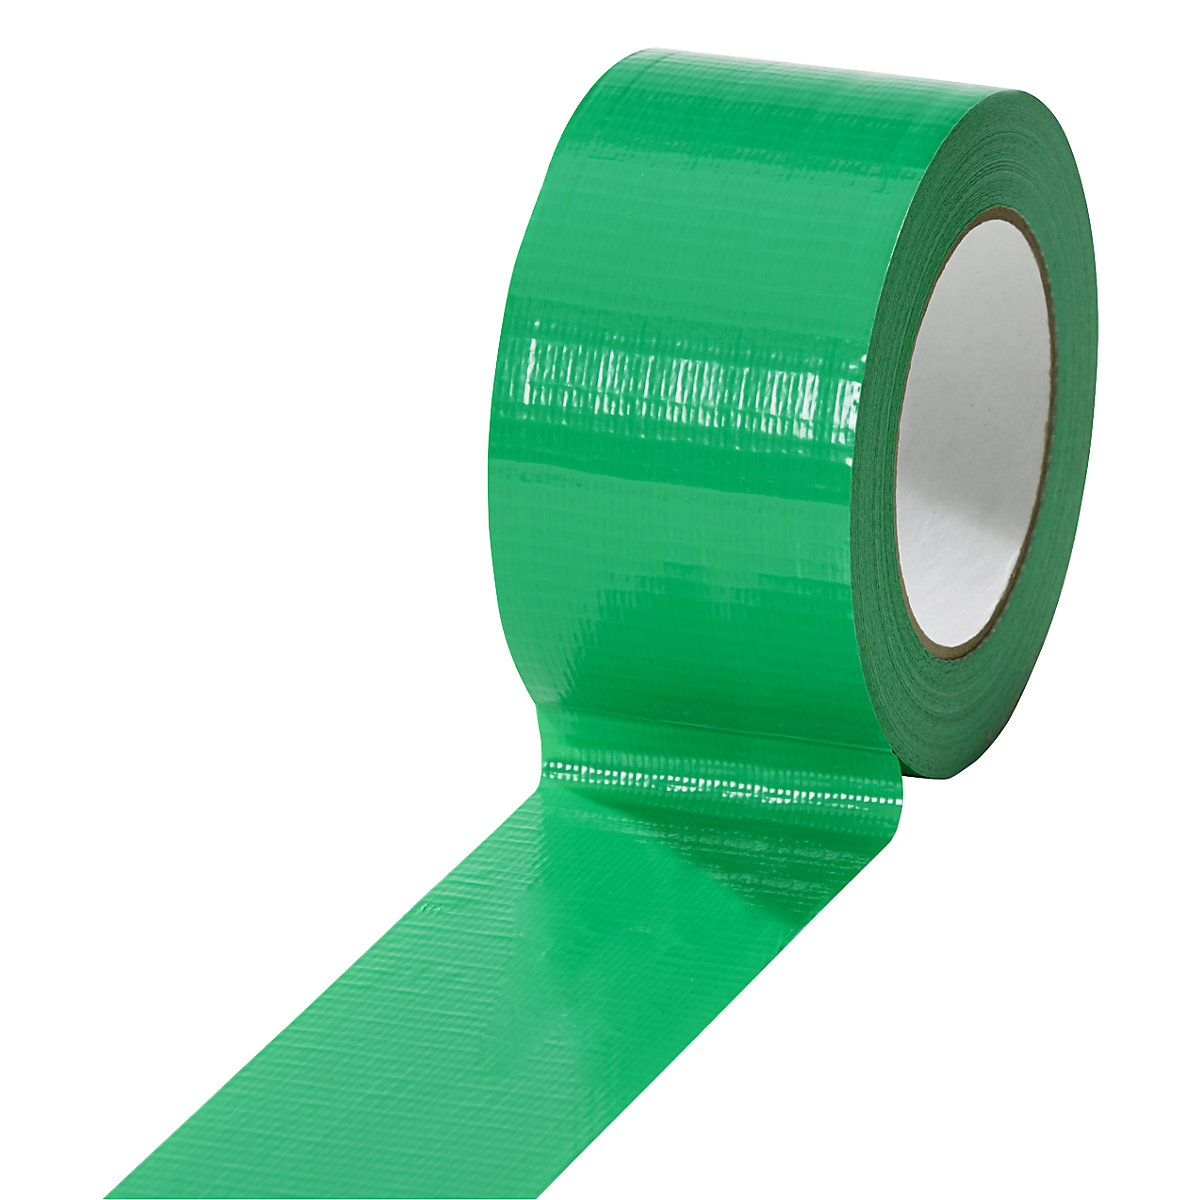 Gewebeband, in verschiedenen Farben, VE 18 Rollen, grün, Bandbreite 50 mm